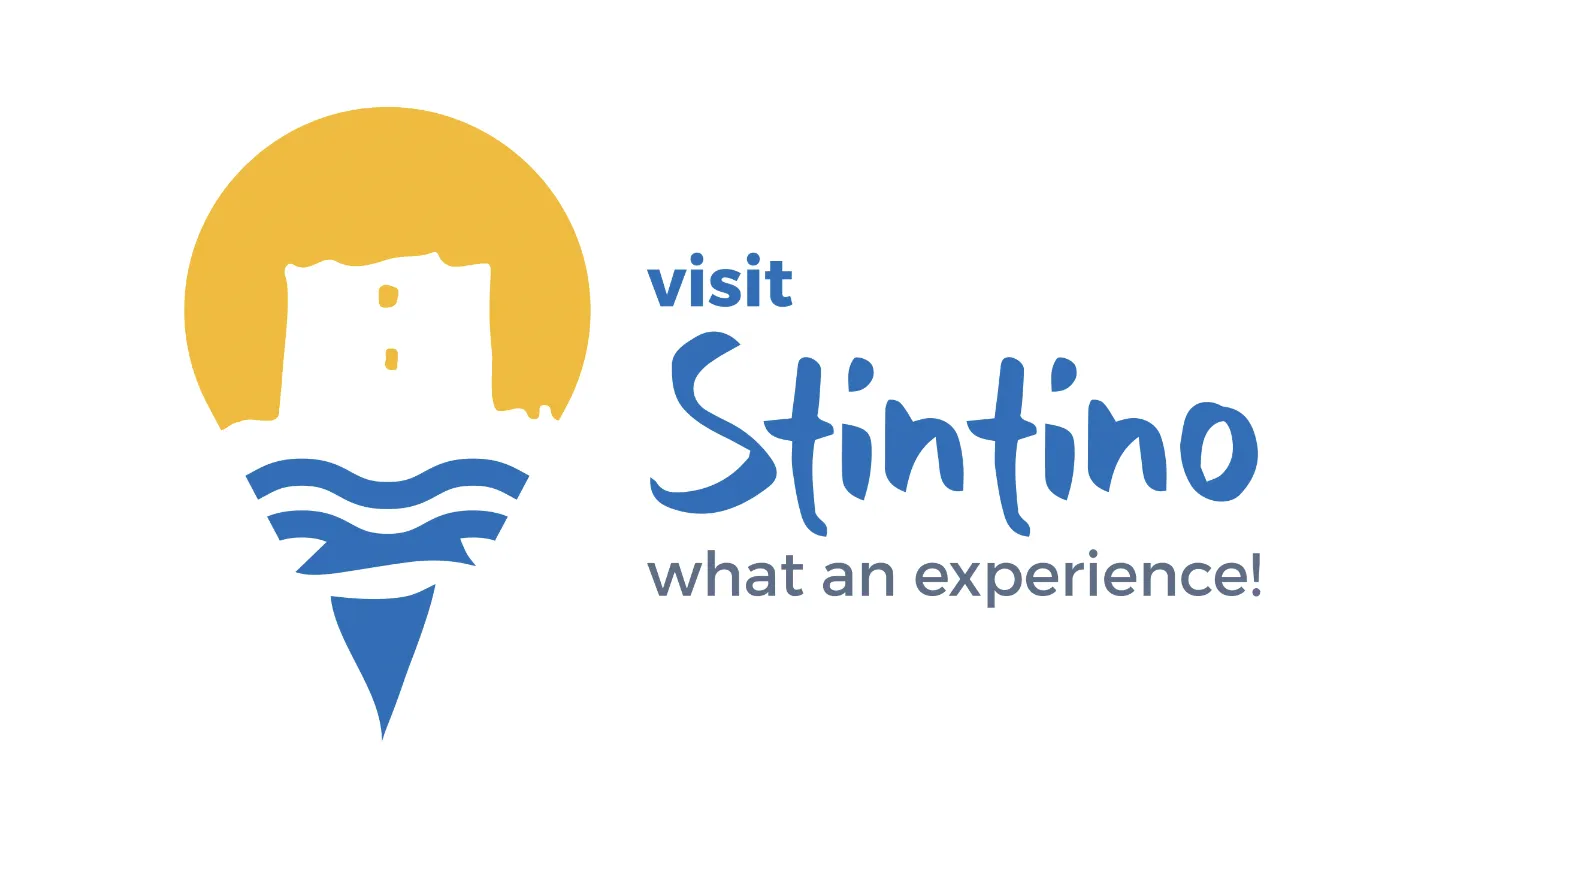 Il Comune di Stintino presenta Visit Stintino, nuovo progetto di marketing territoriale